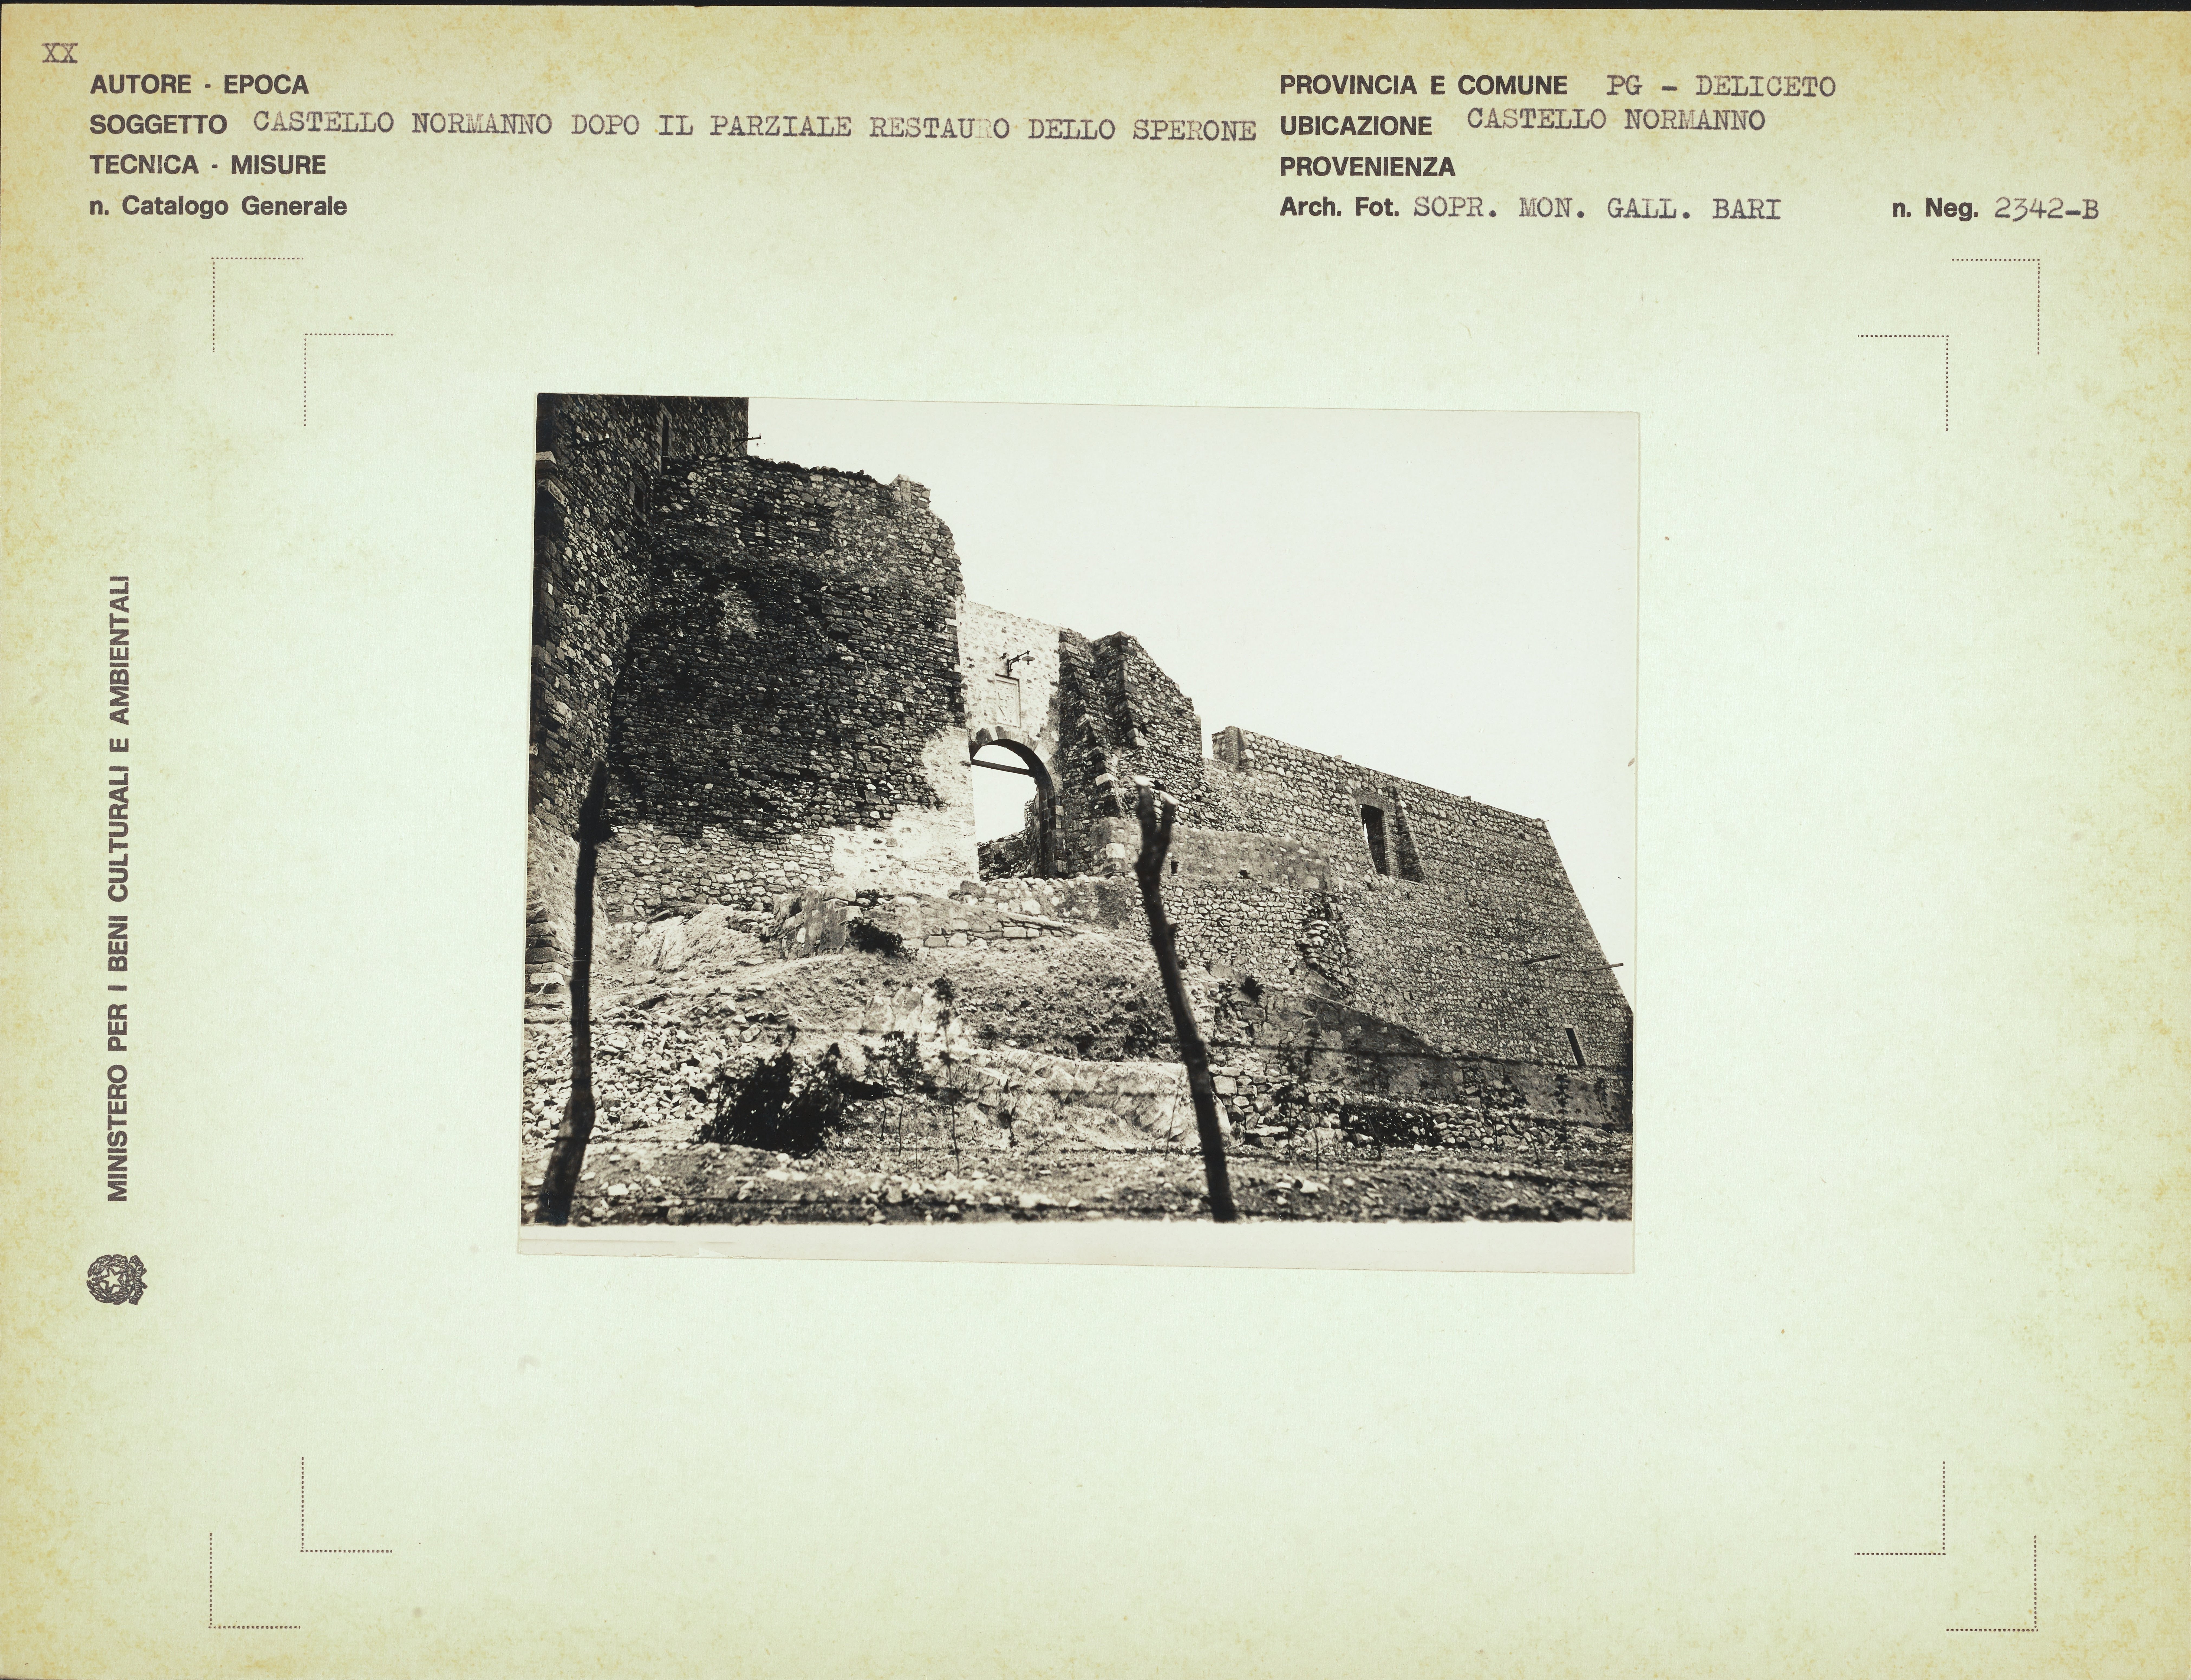 Autore non identificato, Deliceto - castello normanno, 1941-1960, gelatina ai sali d'argento, MPI157366